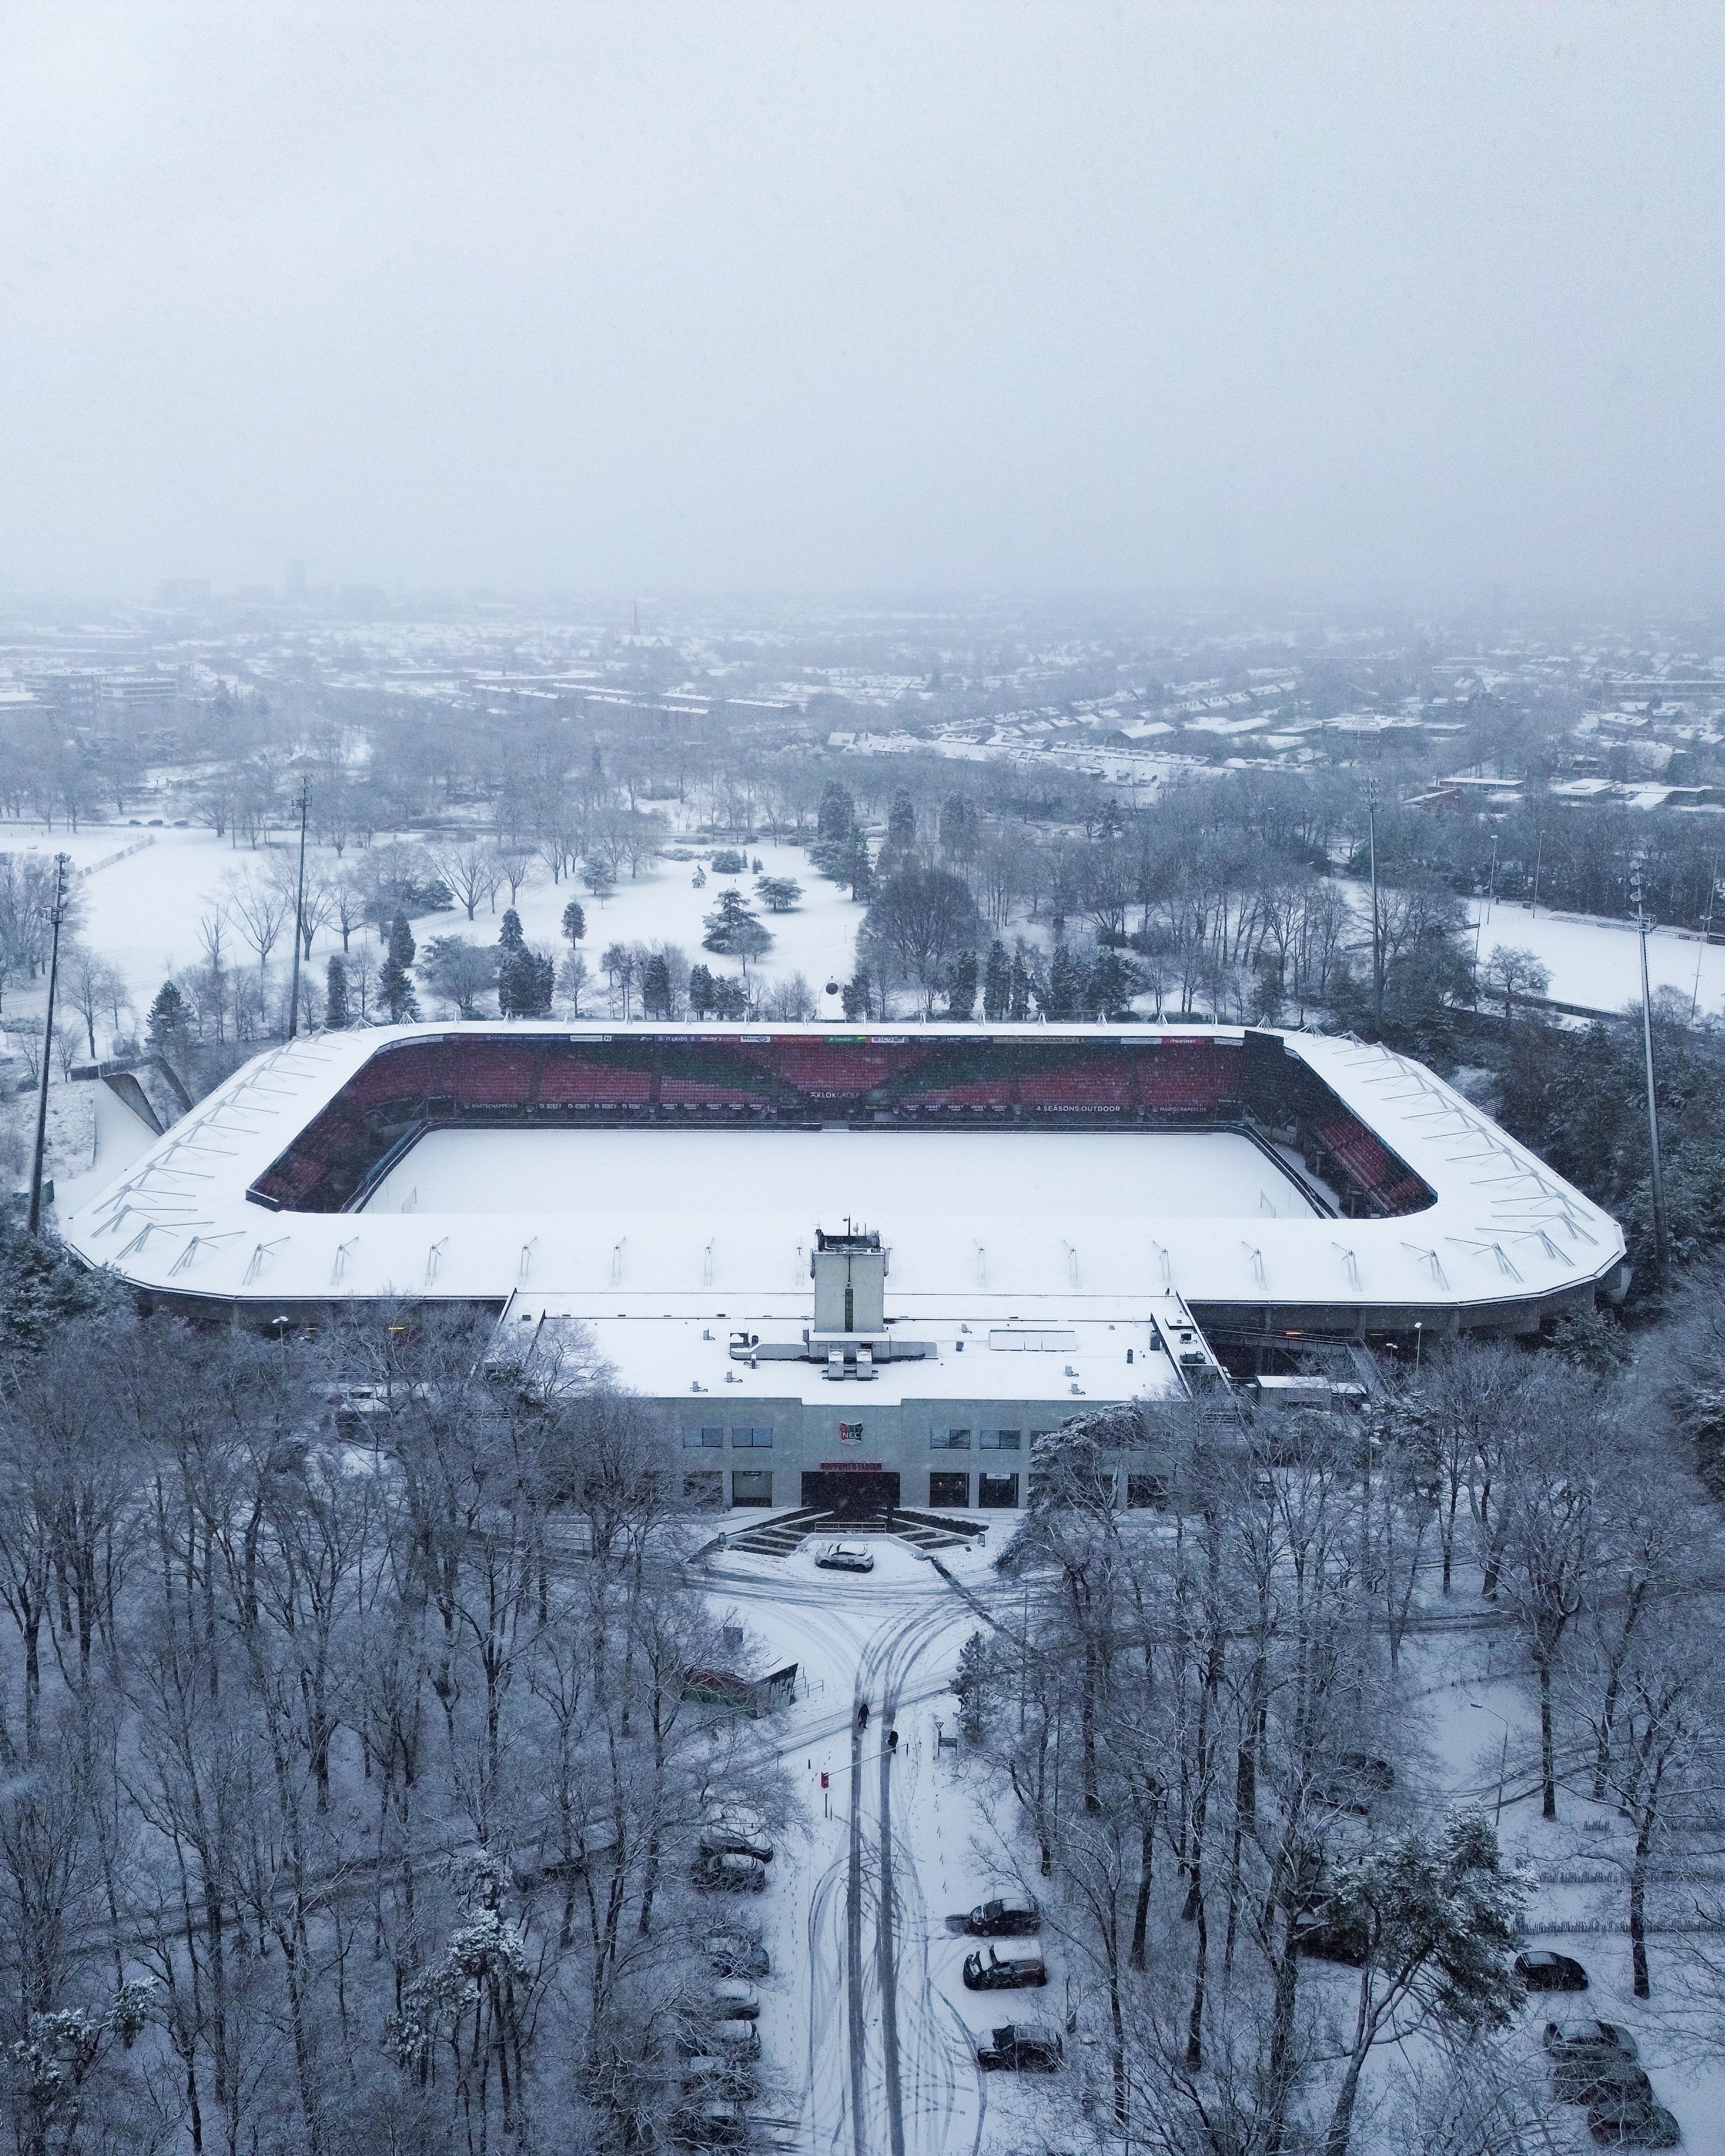 N.E.C. zoekt sneeuwschuivers voor volgende voetbalwedstrijd